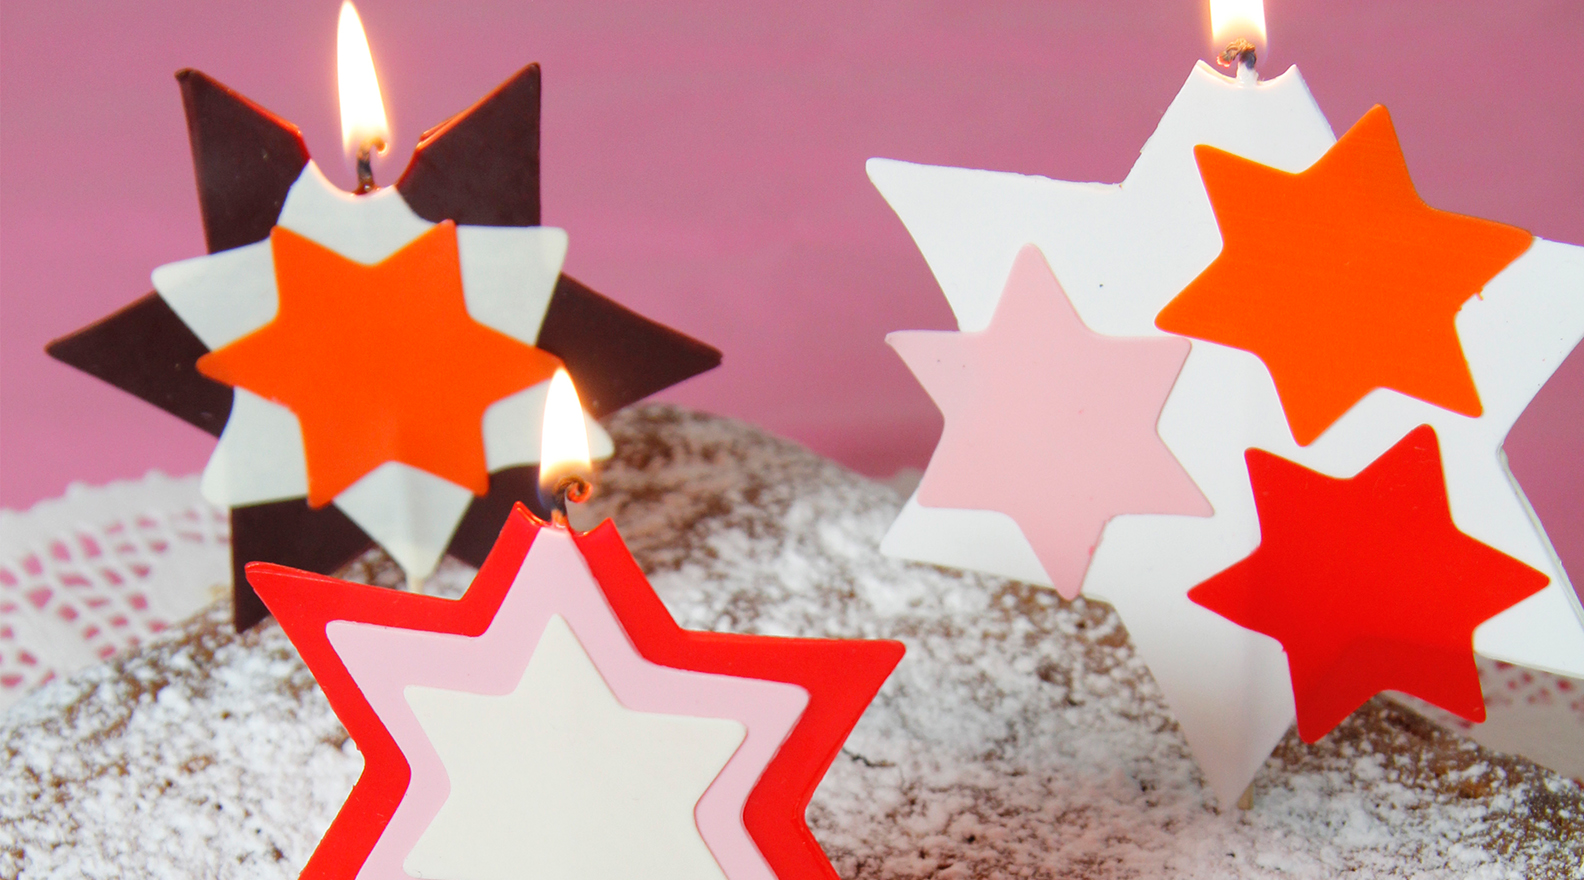 Reproduire la magie de Noël avec des bougies : 12 idées inspirantes